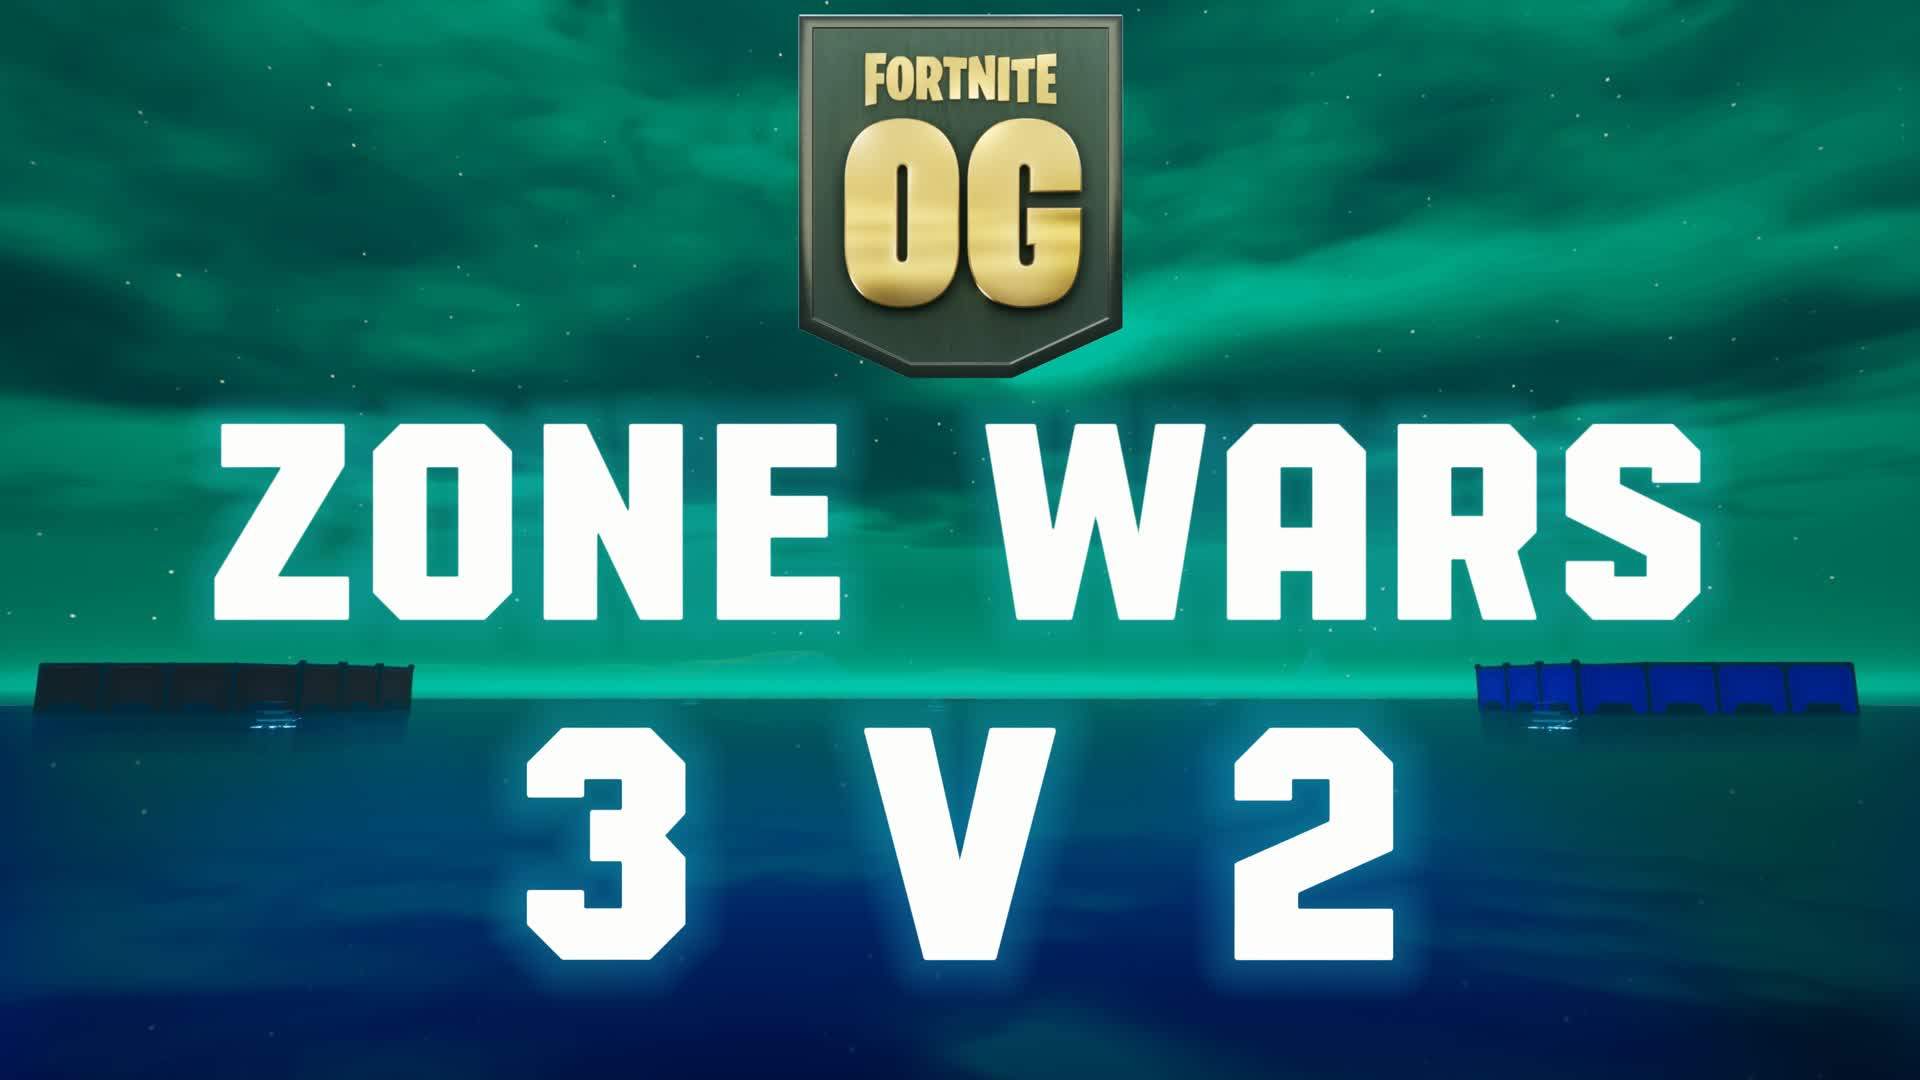 ZONE WARS 3V2 OG